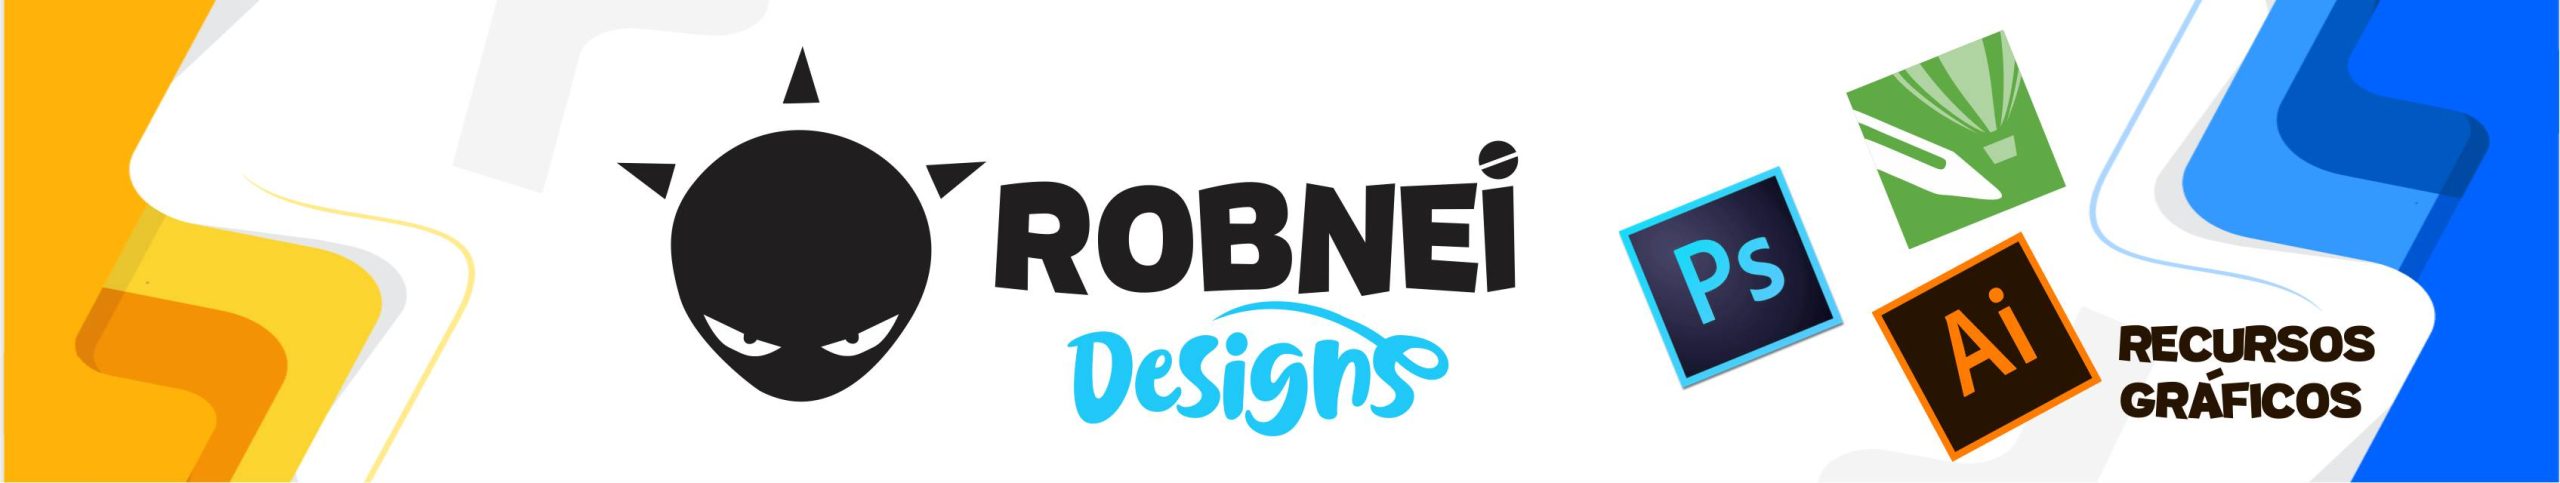 Robnei | PSD | AI | CDR